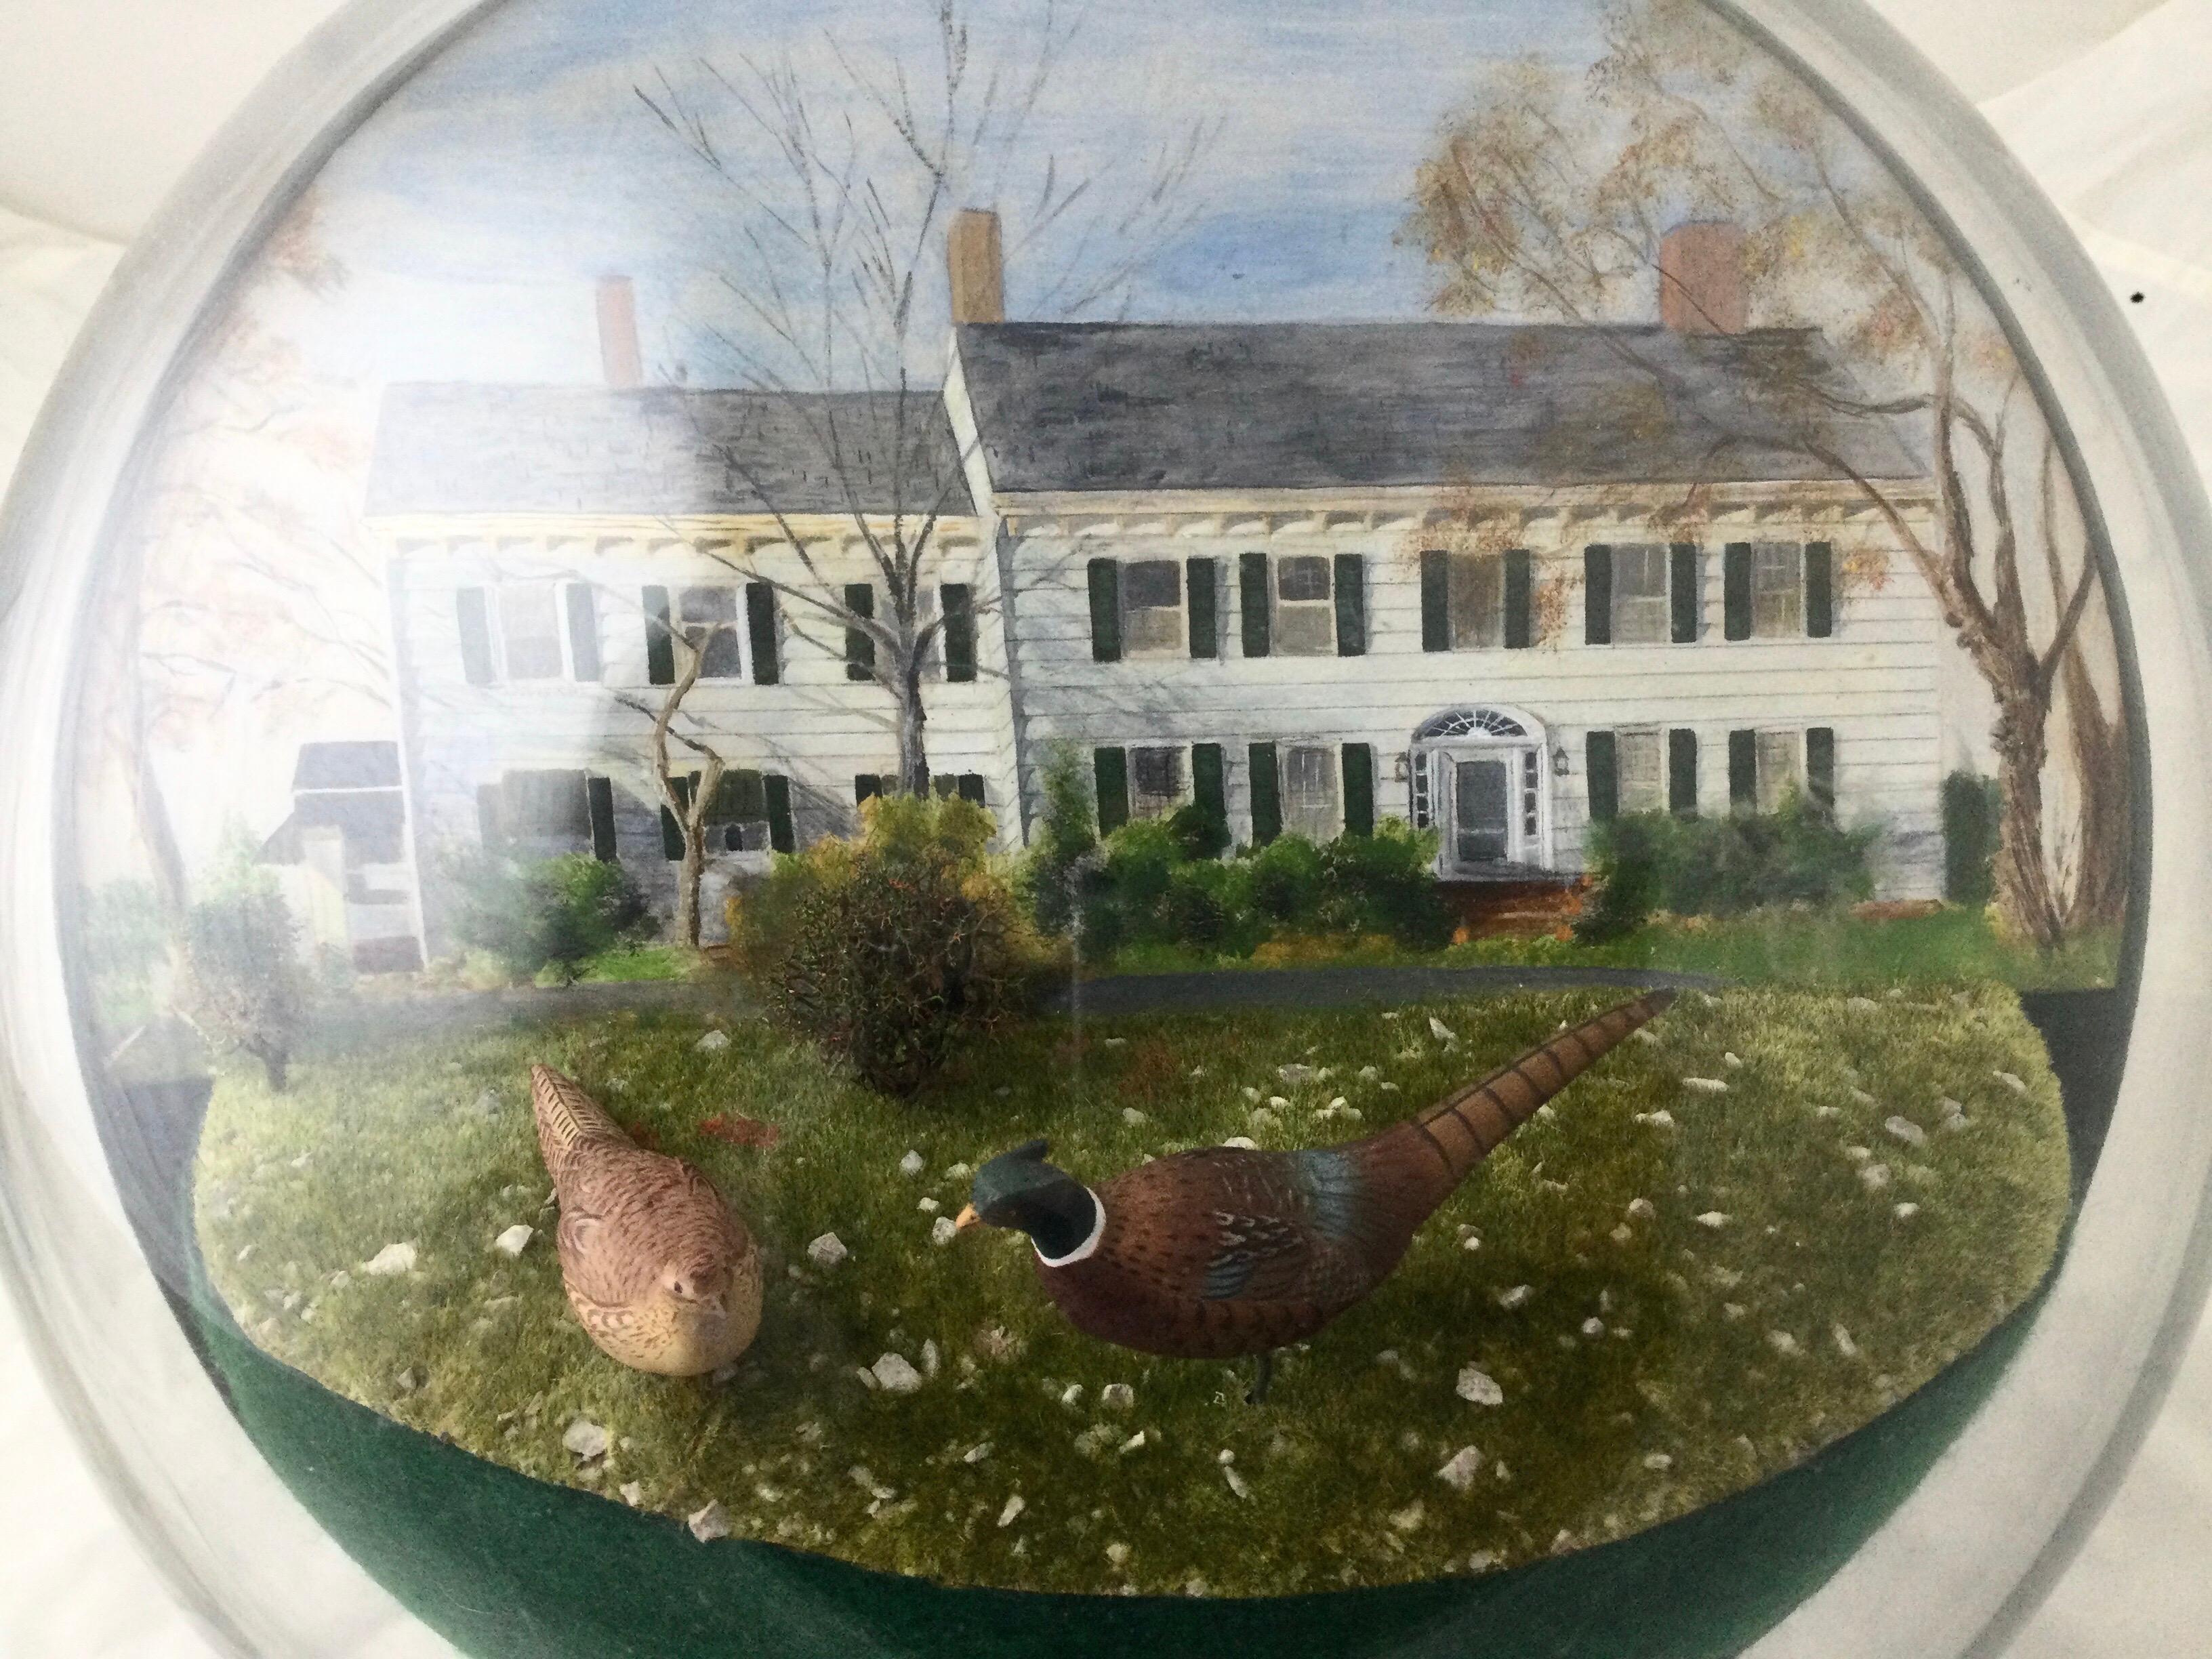 Wunderschönes rundes Diorama eines amerikanischen Hauses, handbemalt mit handgeschnitzten Vögeln. Das Haus sieht aus wie ein wunderschönes handgemaltes Aquarell. Die Vögel sind handgeschnitzt und bemalt. Sieht aus wie die Bäume und Ton sind gute